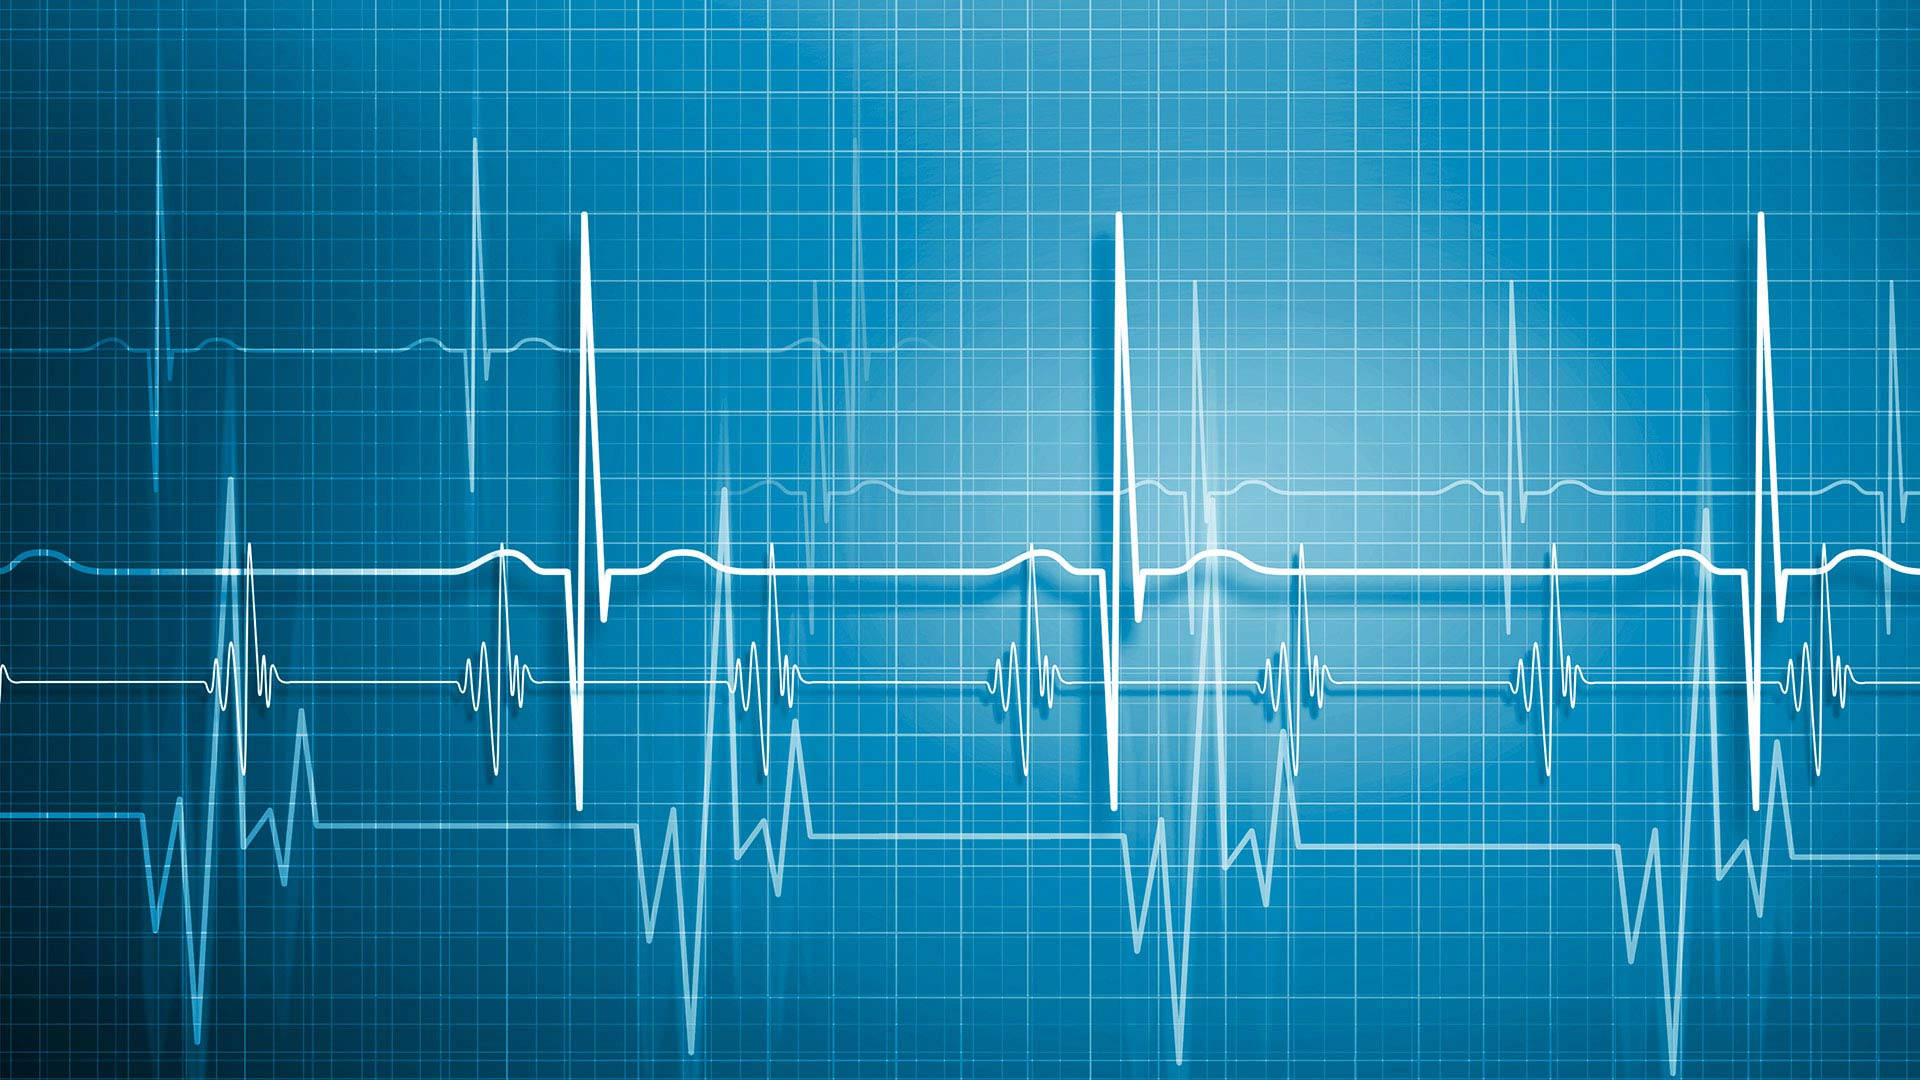 MBBS Normal Heartbeat Chart Wallpaper